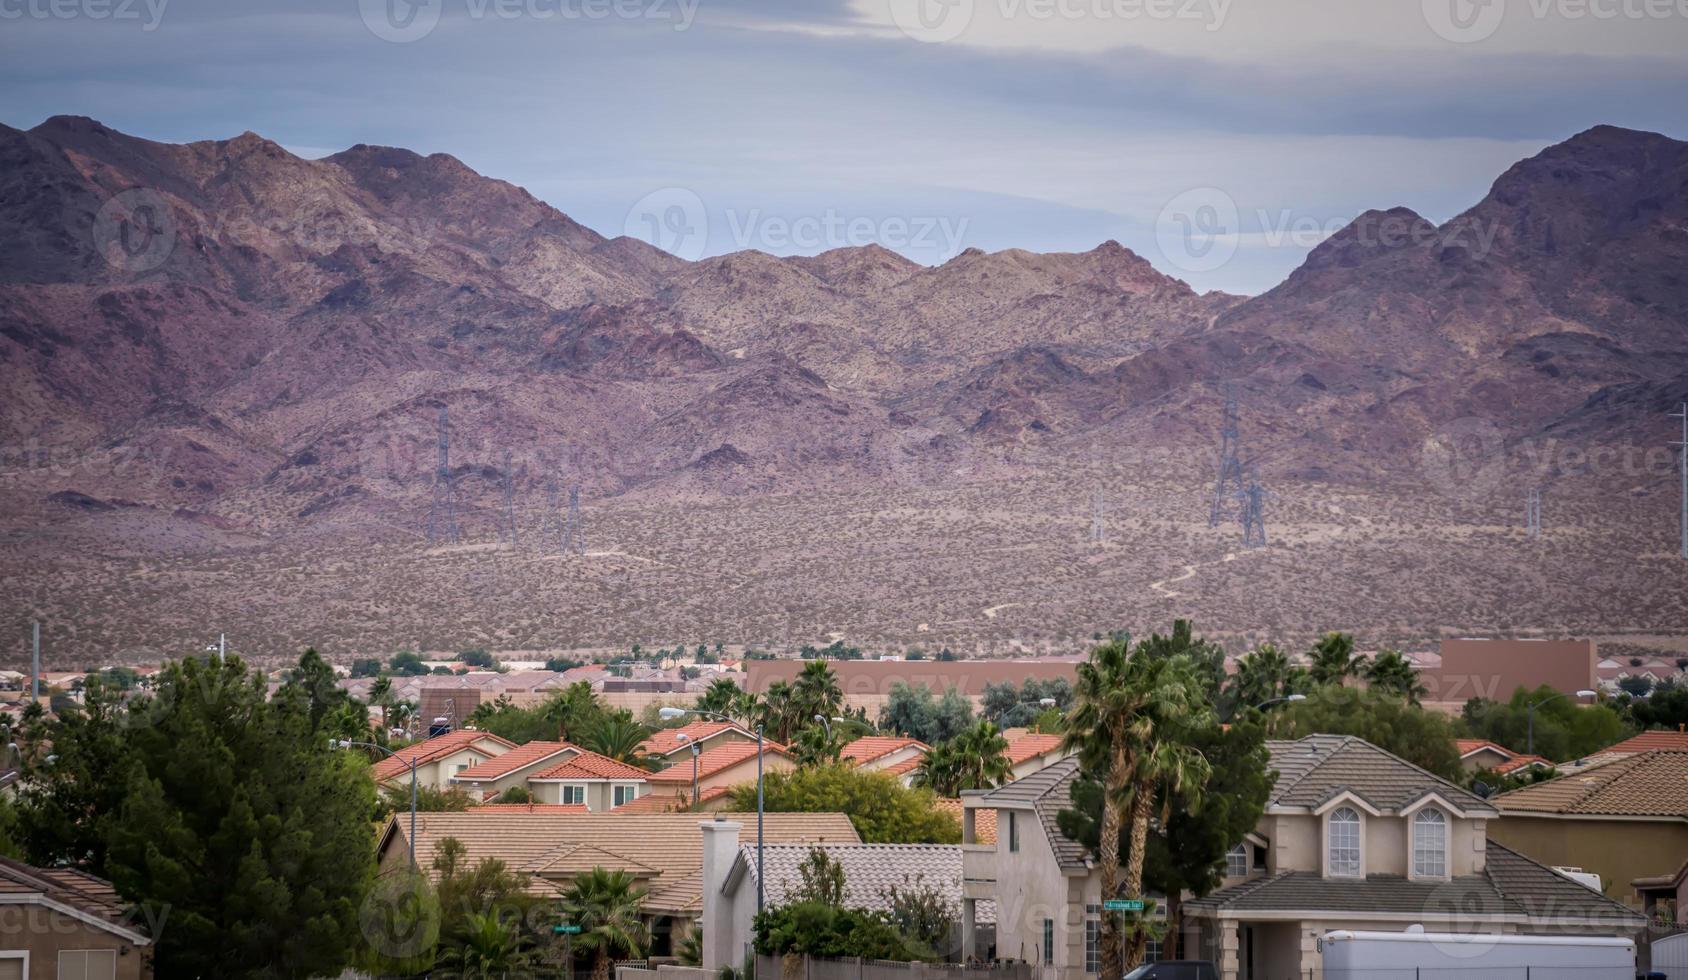 Las Vegas ville entourée de montagnes de roches rouges et de la vallée de feu photo